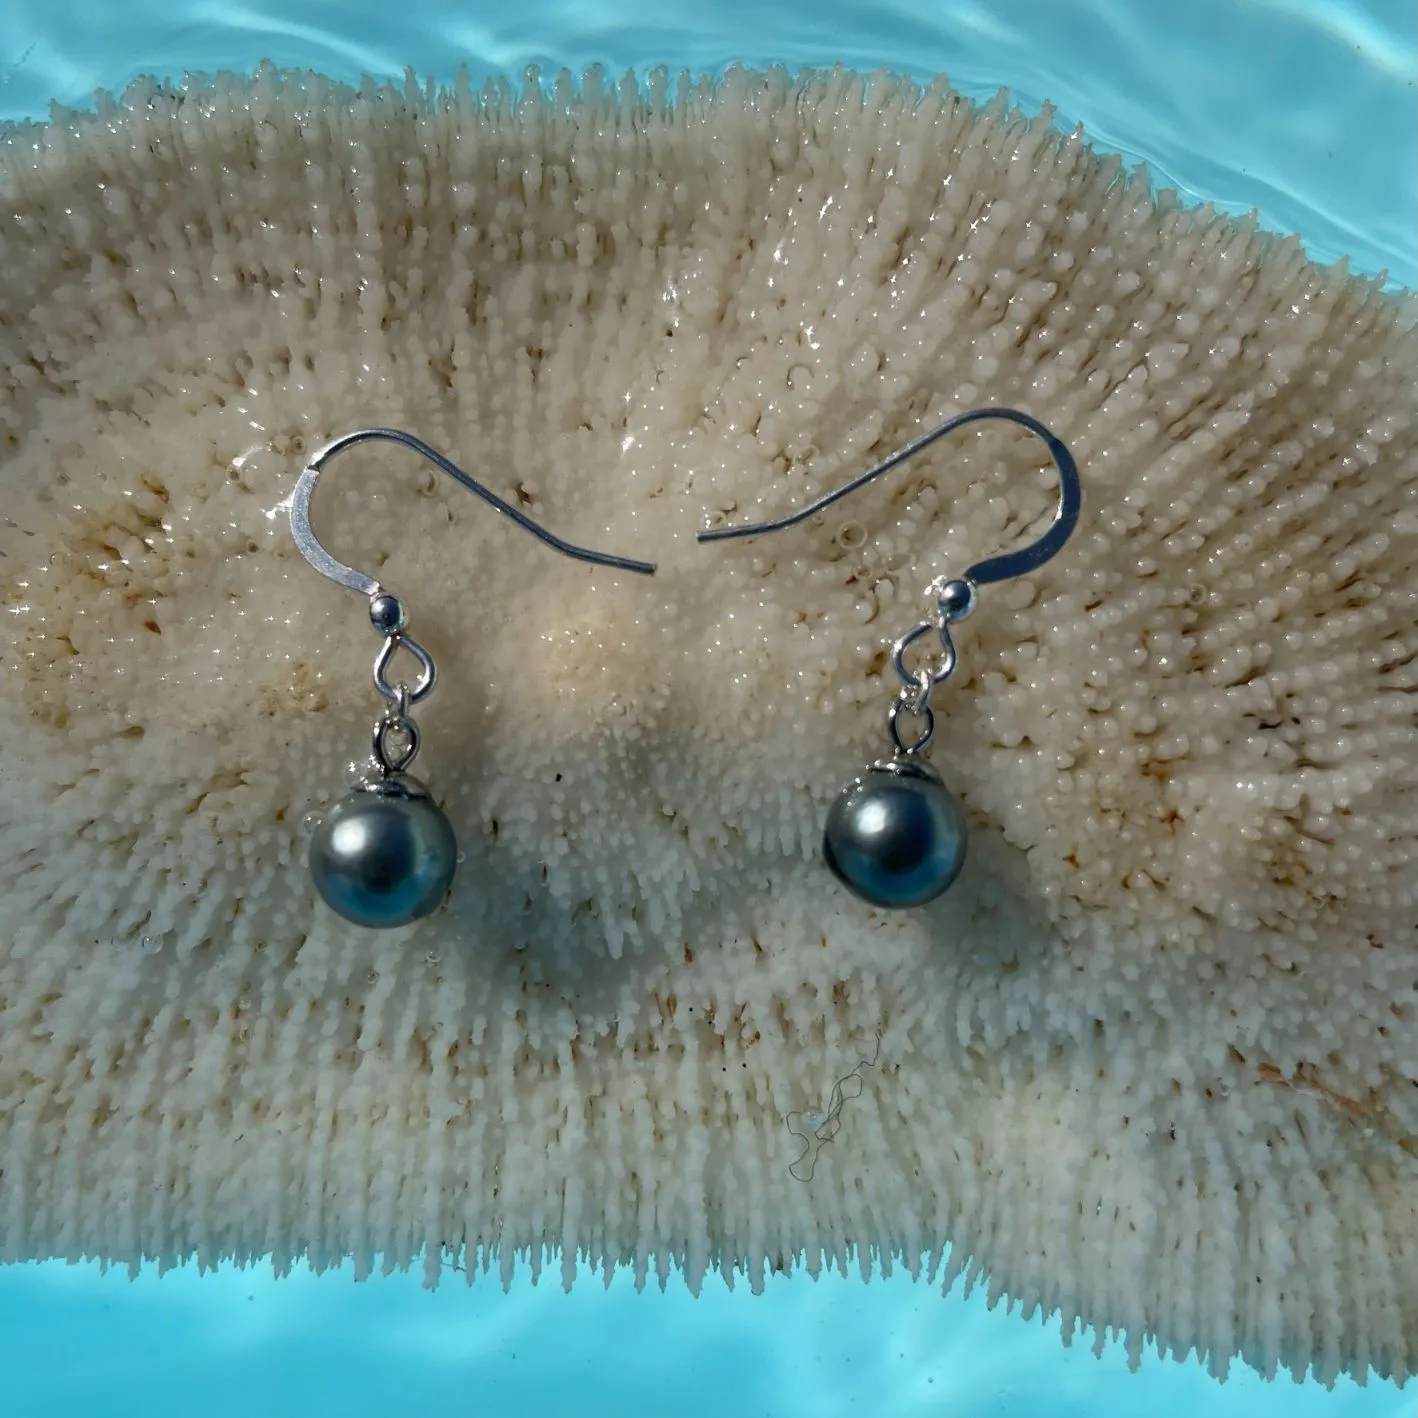 Boucles d’oreilles Maimiti sur un corail dans l'eau